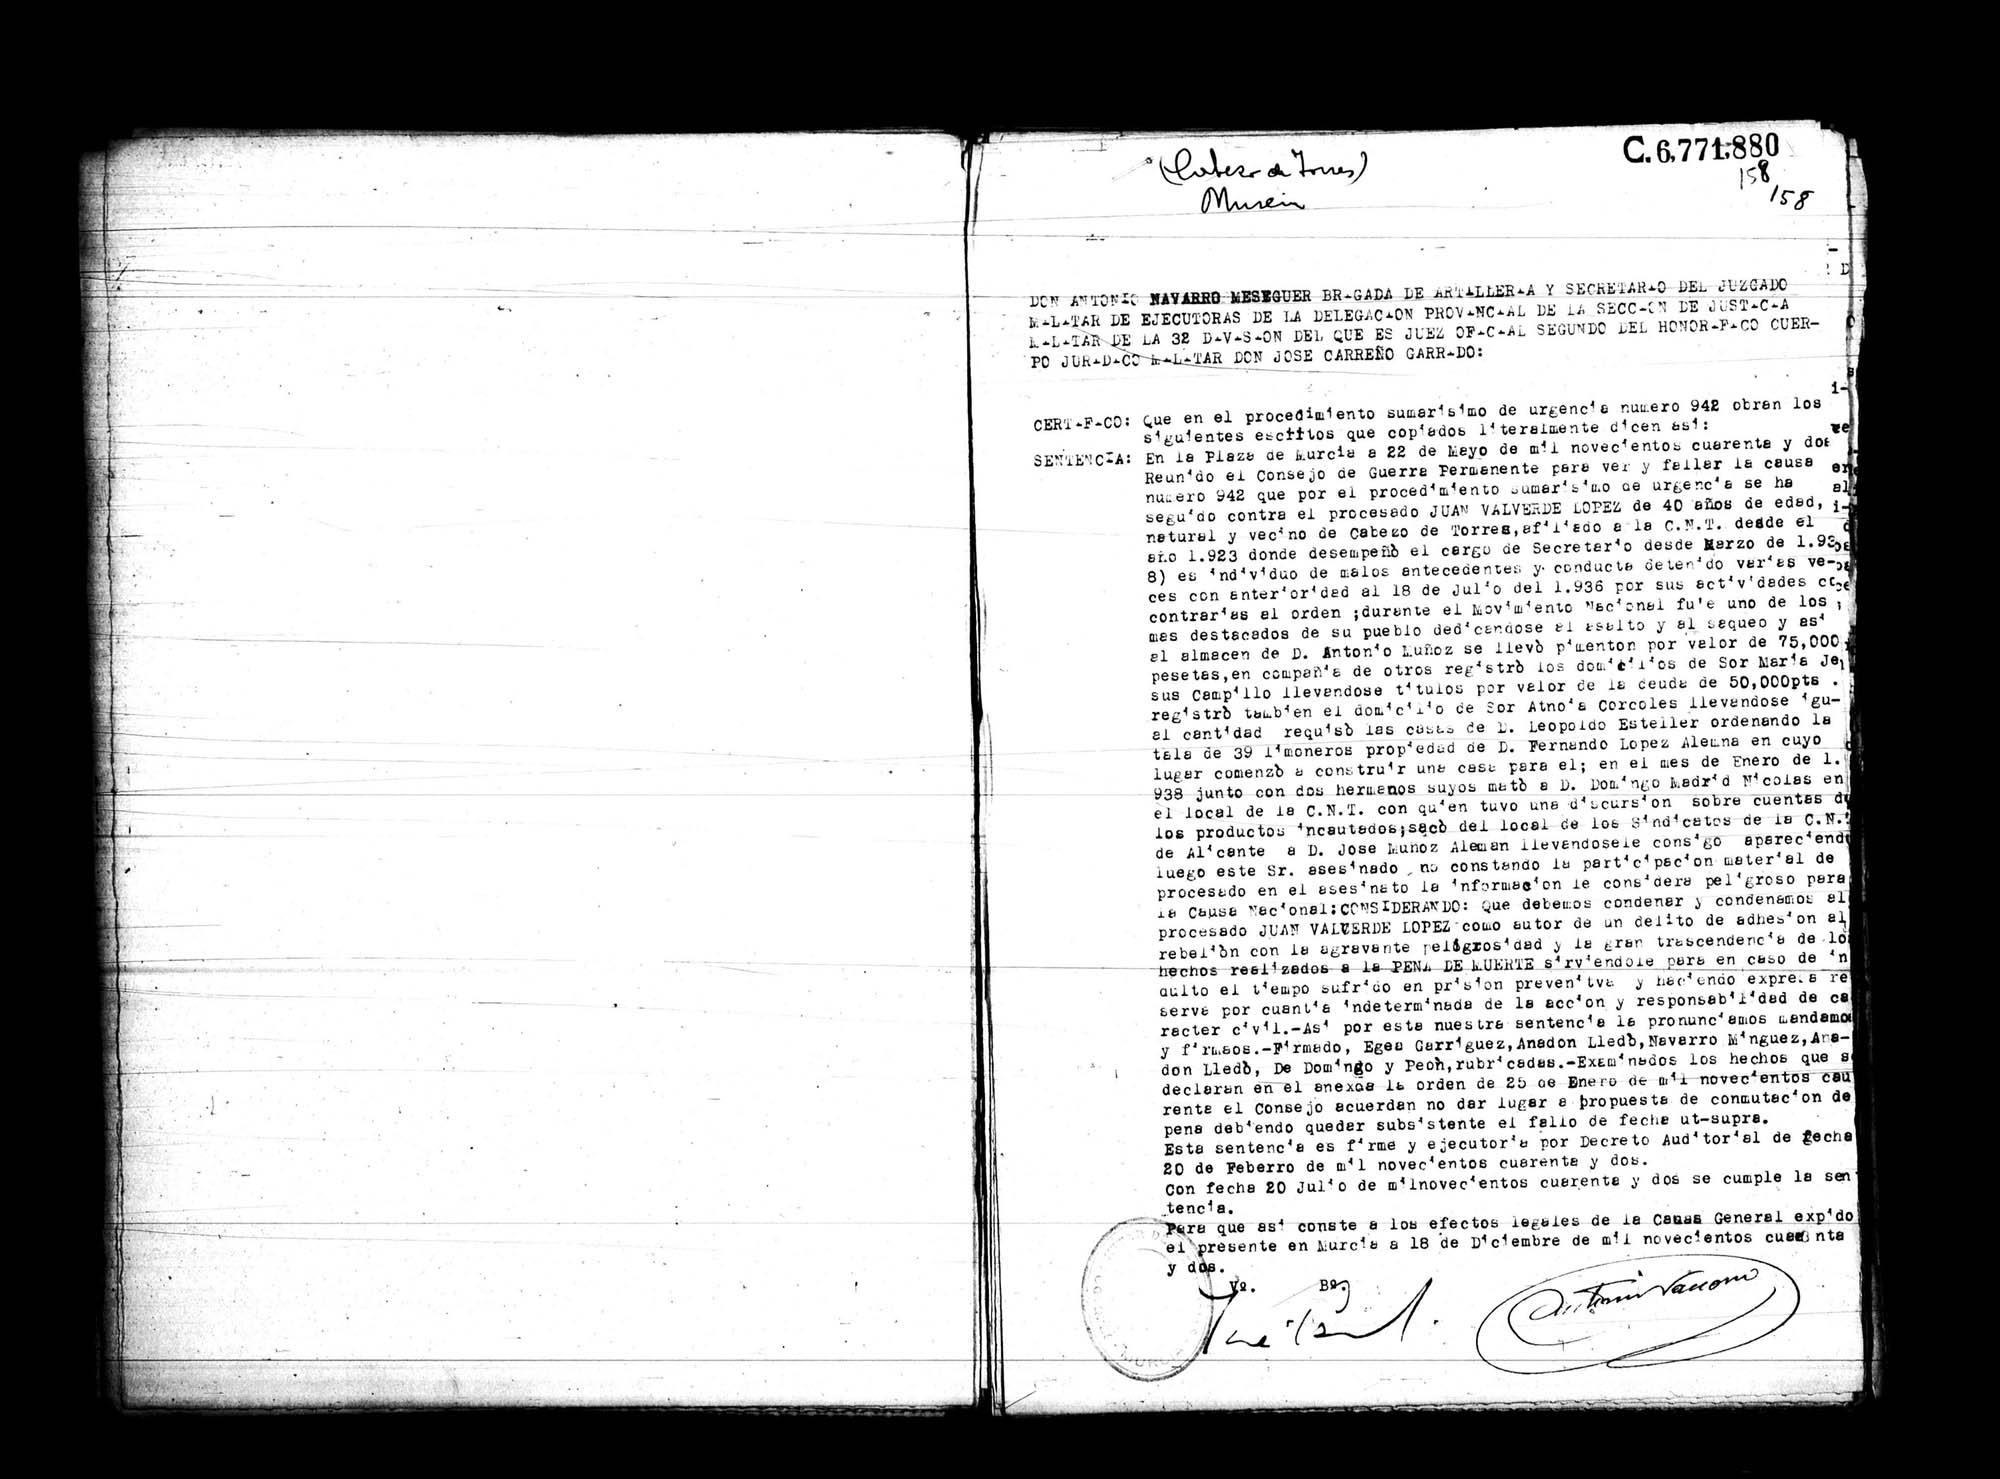 Certificado de la sentencia pronunciada contra Juan Valverde López, causa 942, el 22 de mayo de 1942 en Murcia.